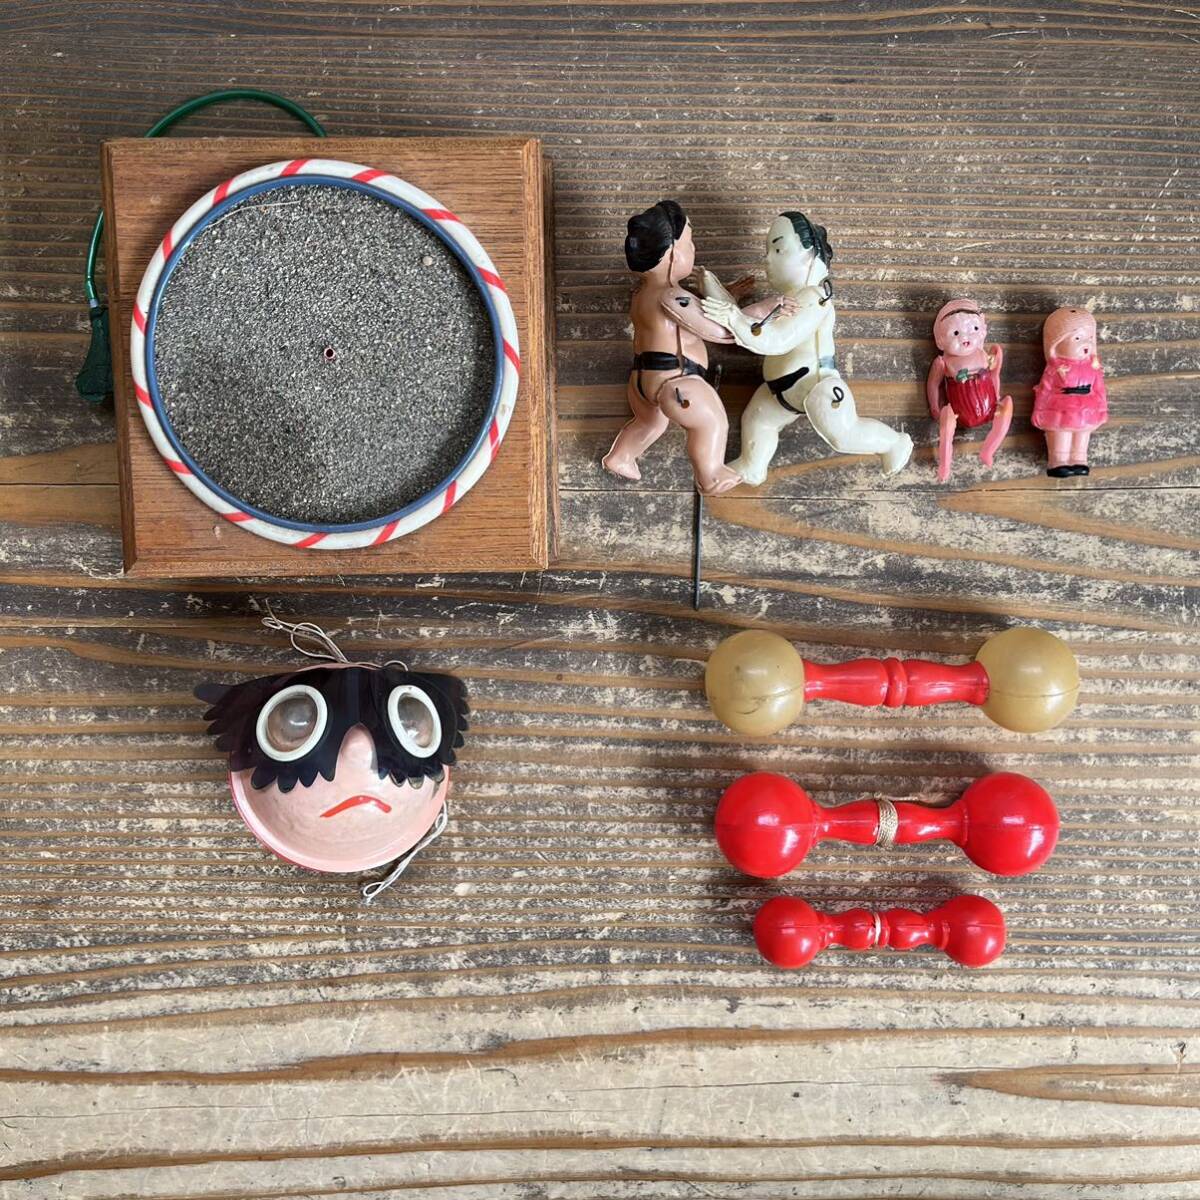 セルロイド 相撲 人形 少女 ガラガラ おもちゃ 玩具 昭和 の画像1